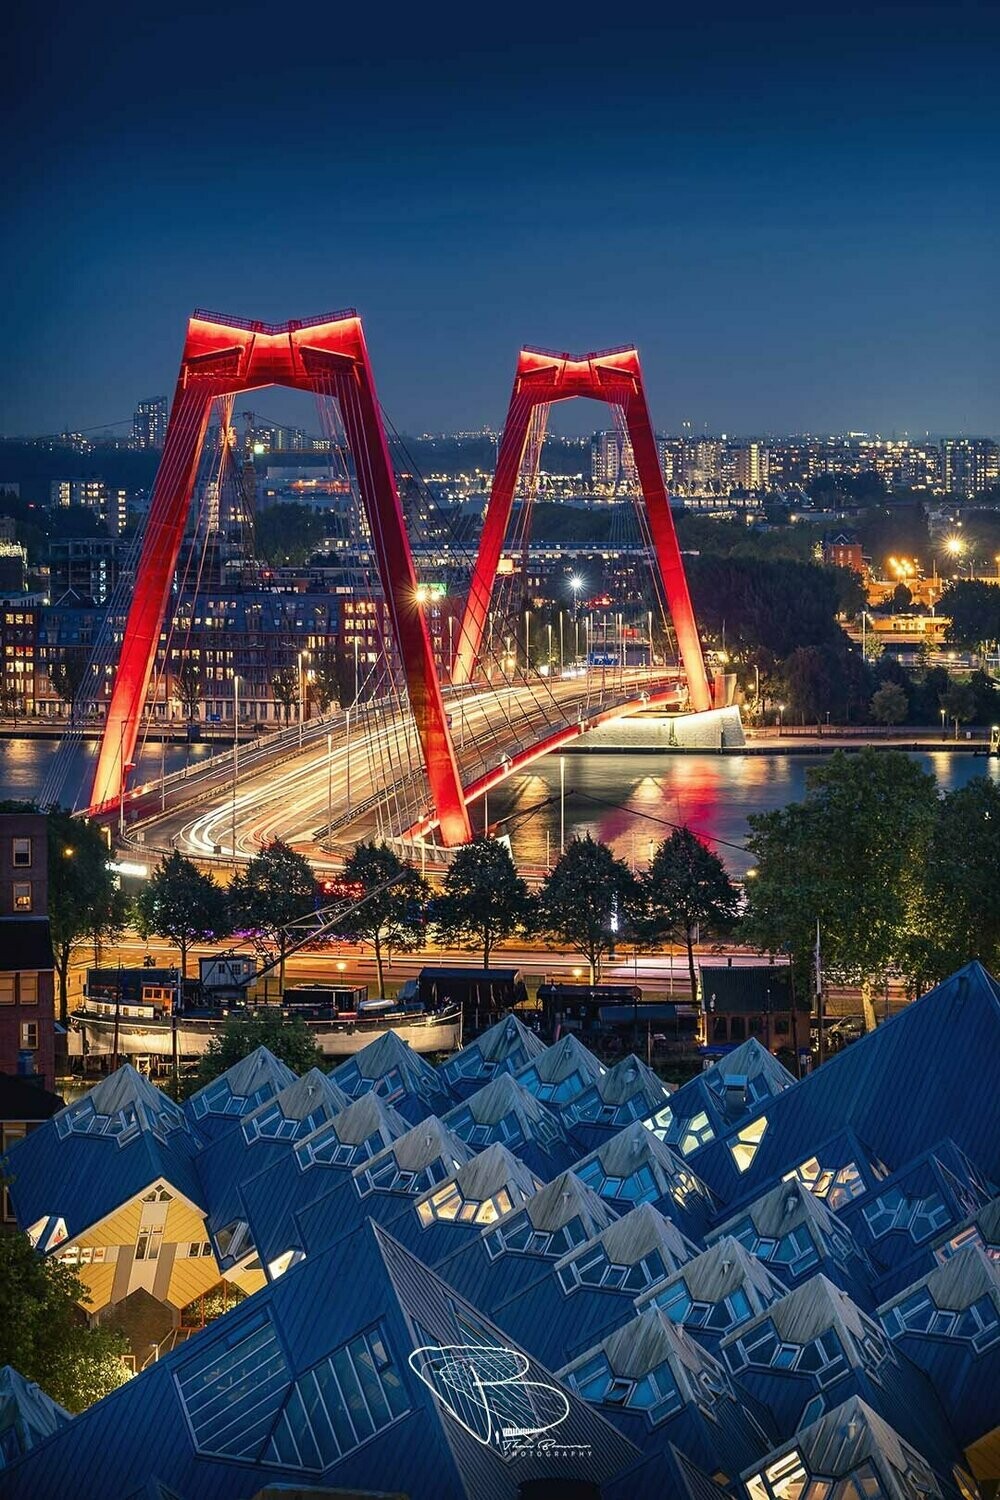 Willemsbrug en Kubuswoningen Rotterdam